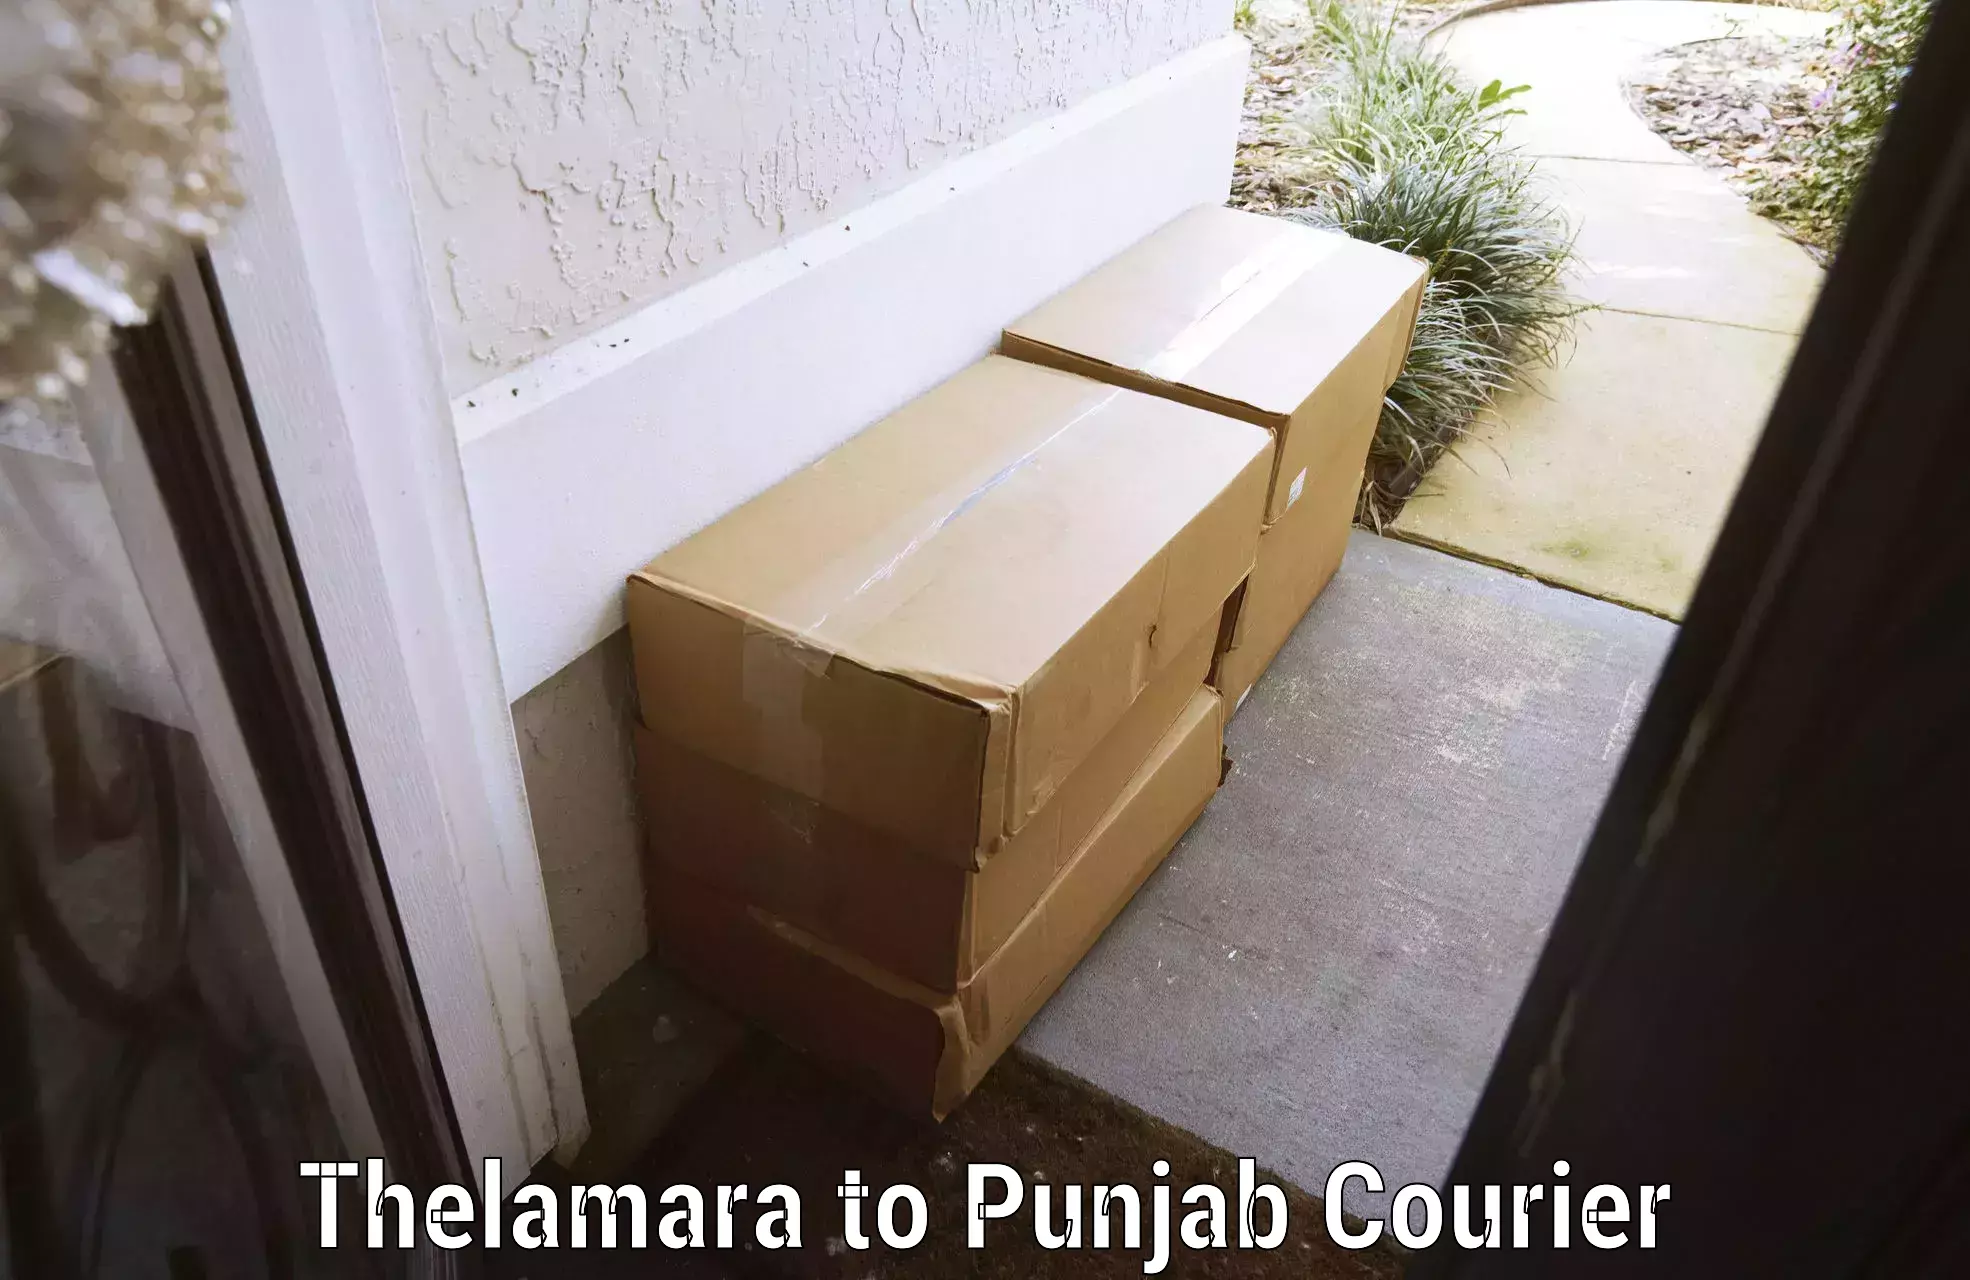 Express baggage shipping Thelamara to Punjab